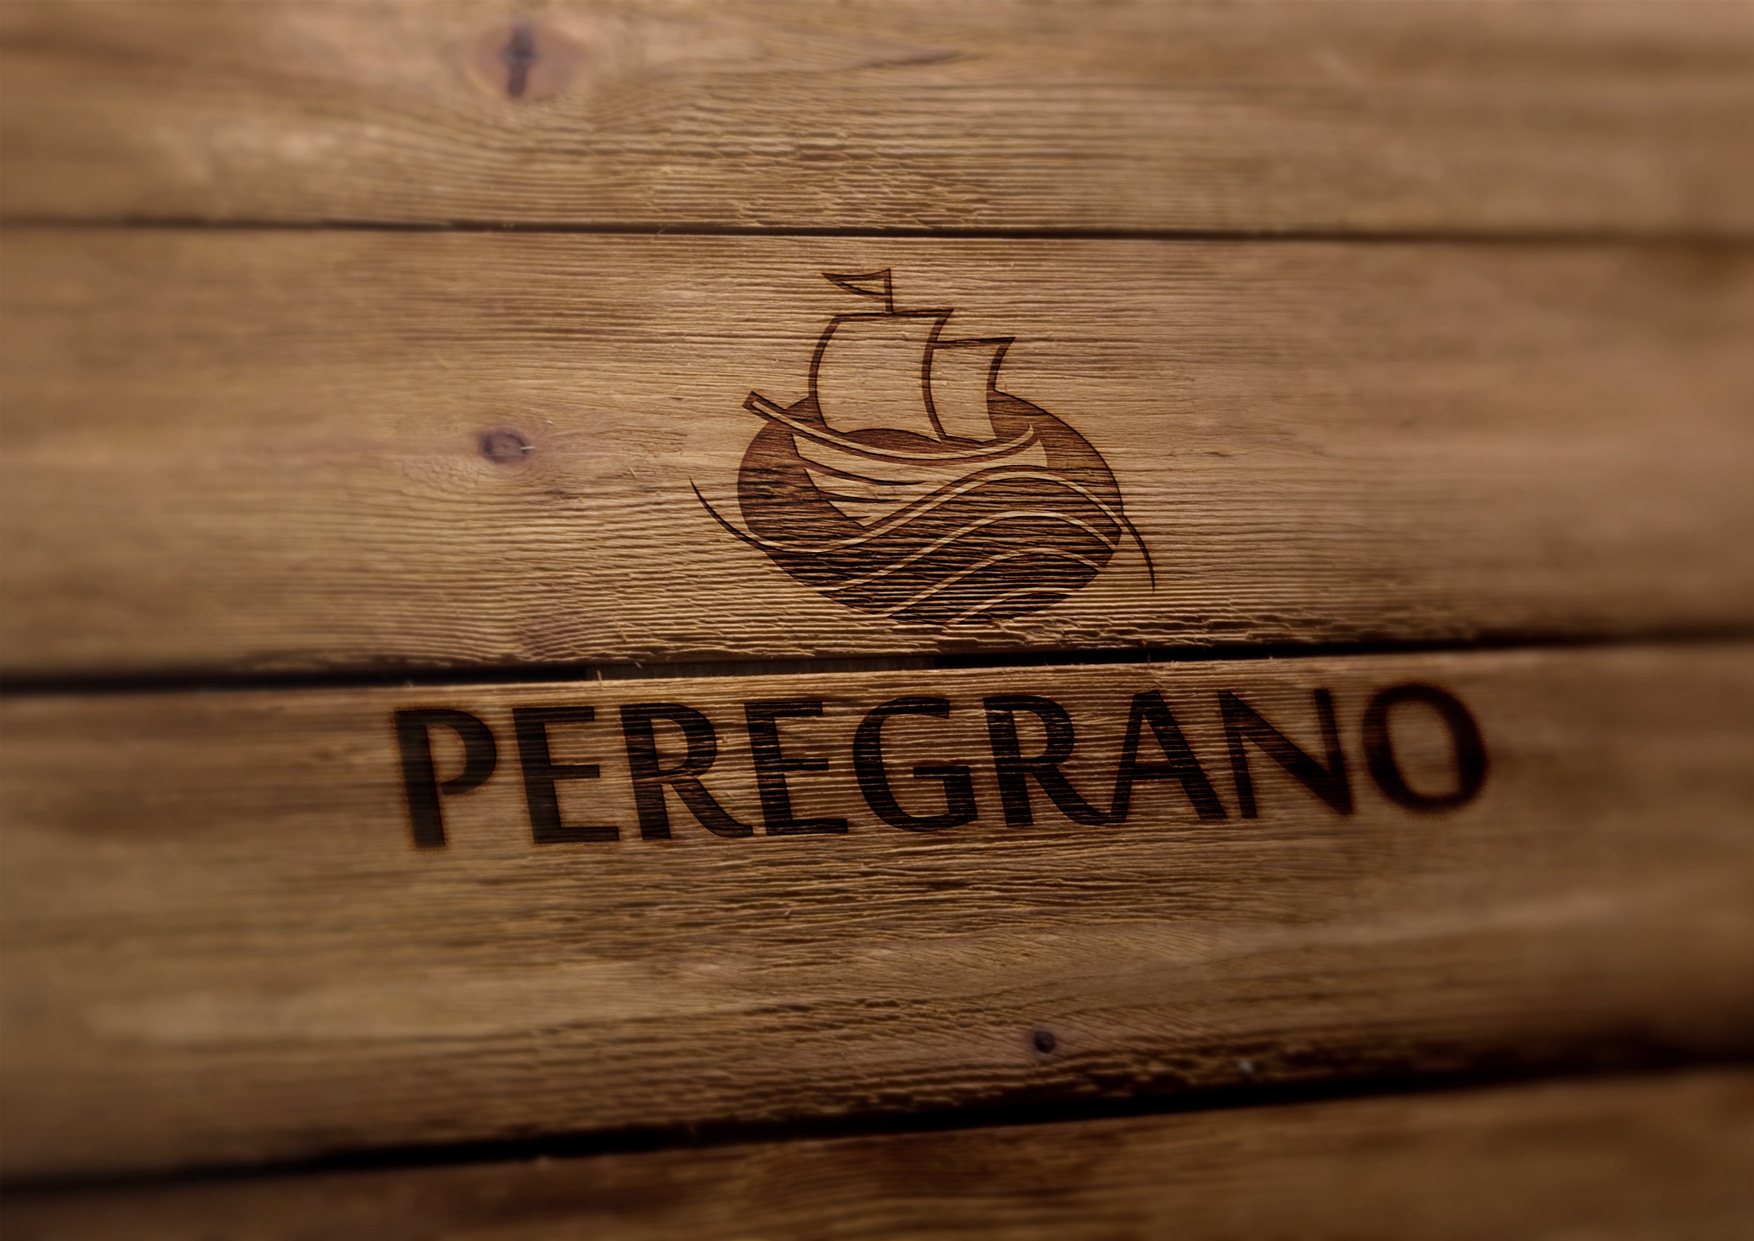 Peregrano